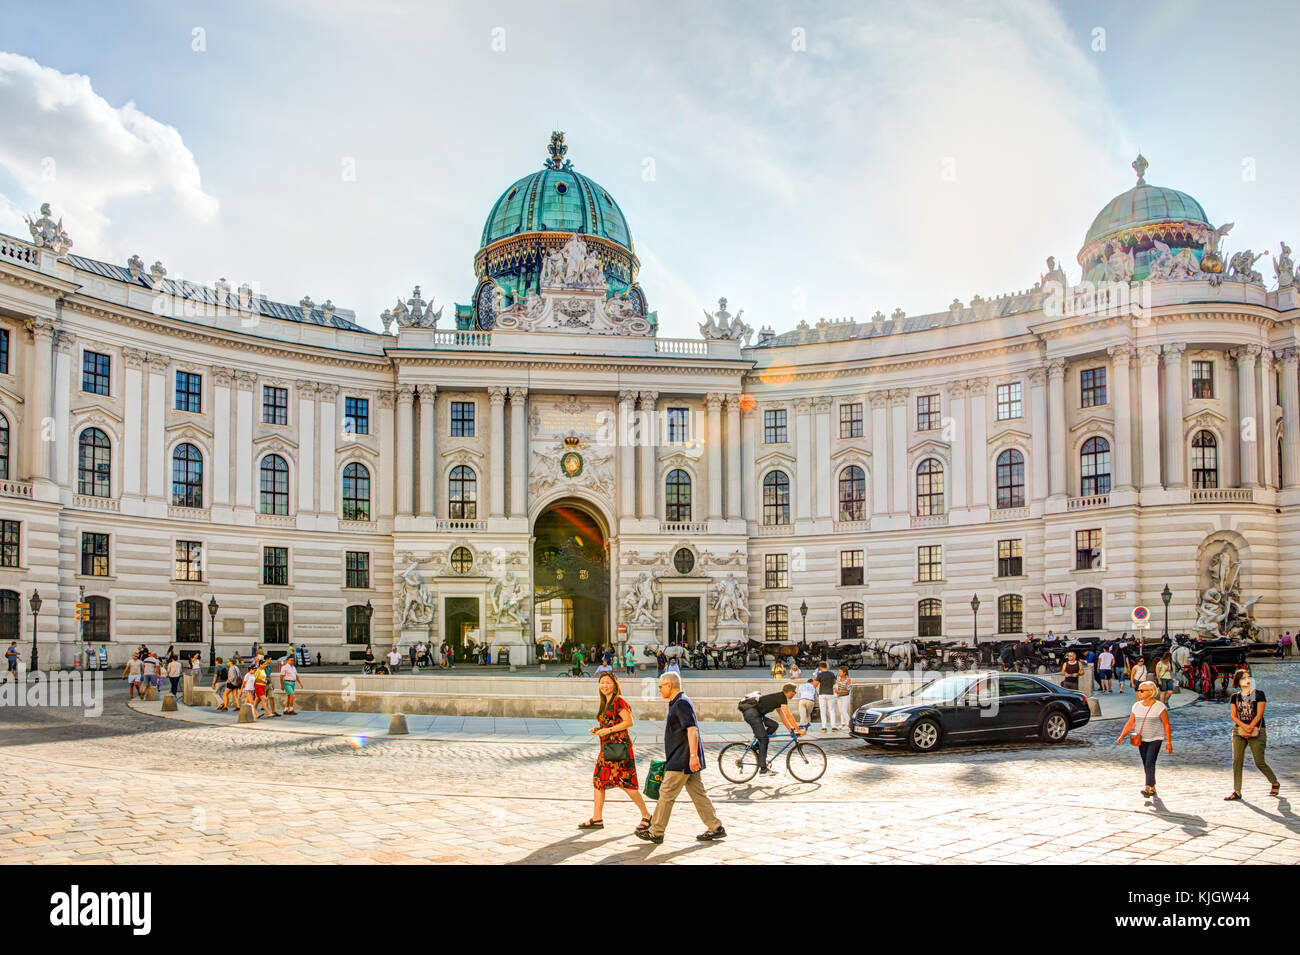 Wien, Österreich - 28 August: Touristen an der berühmten kaiserlichen Hofburg in Wien, Österreich, am 28. August 2017. Stockfoto